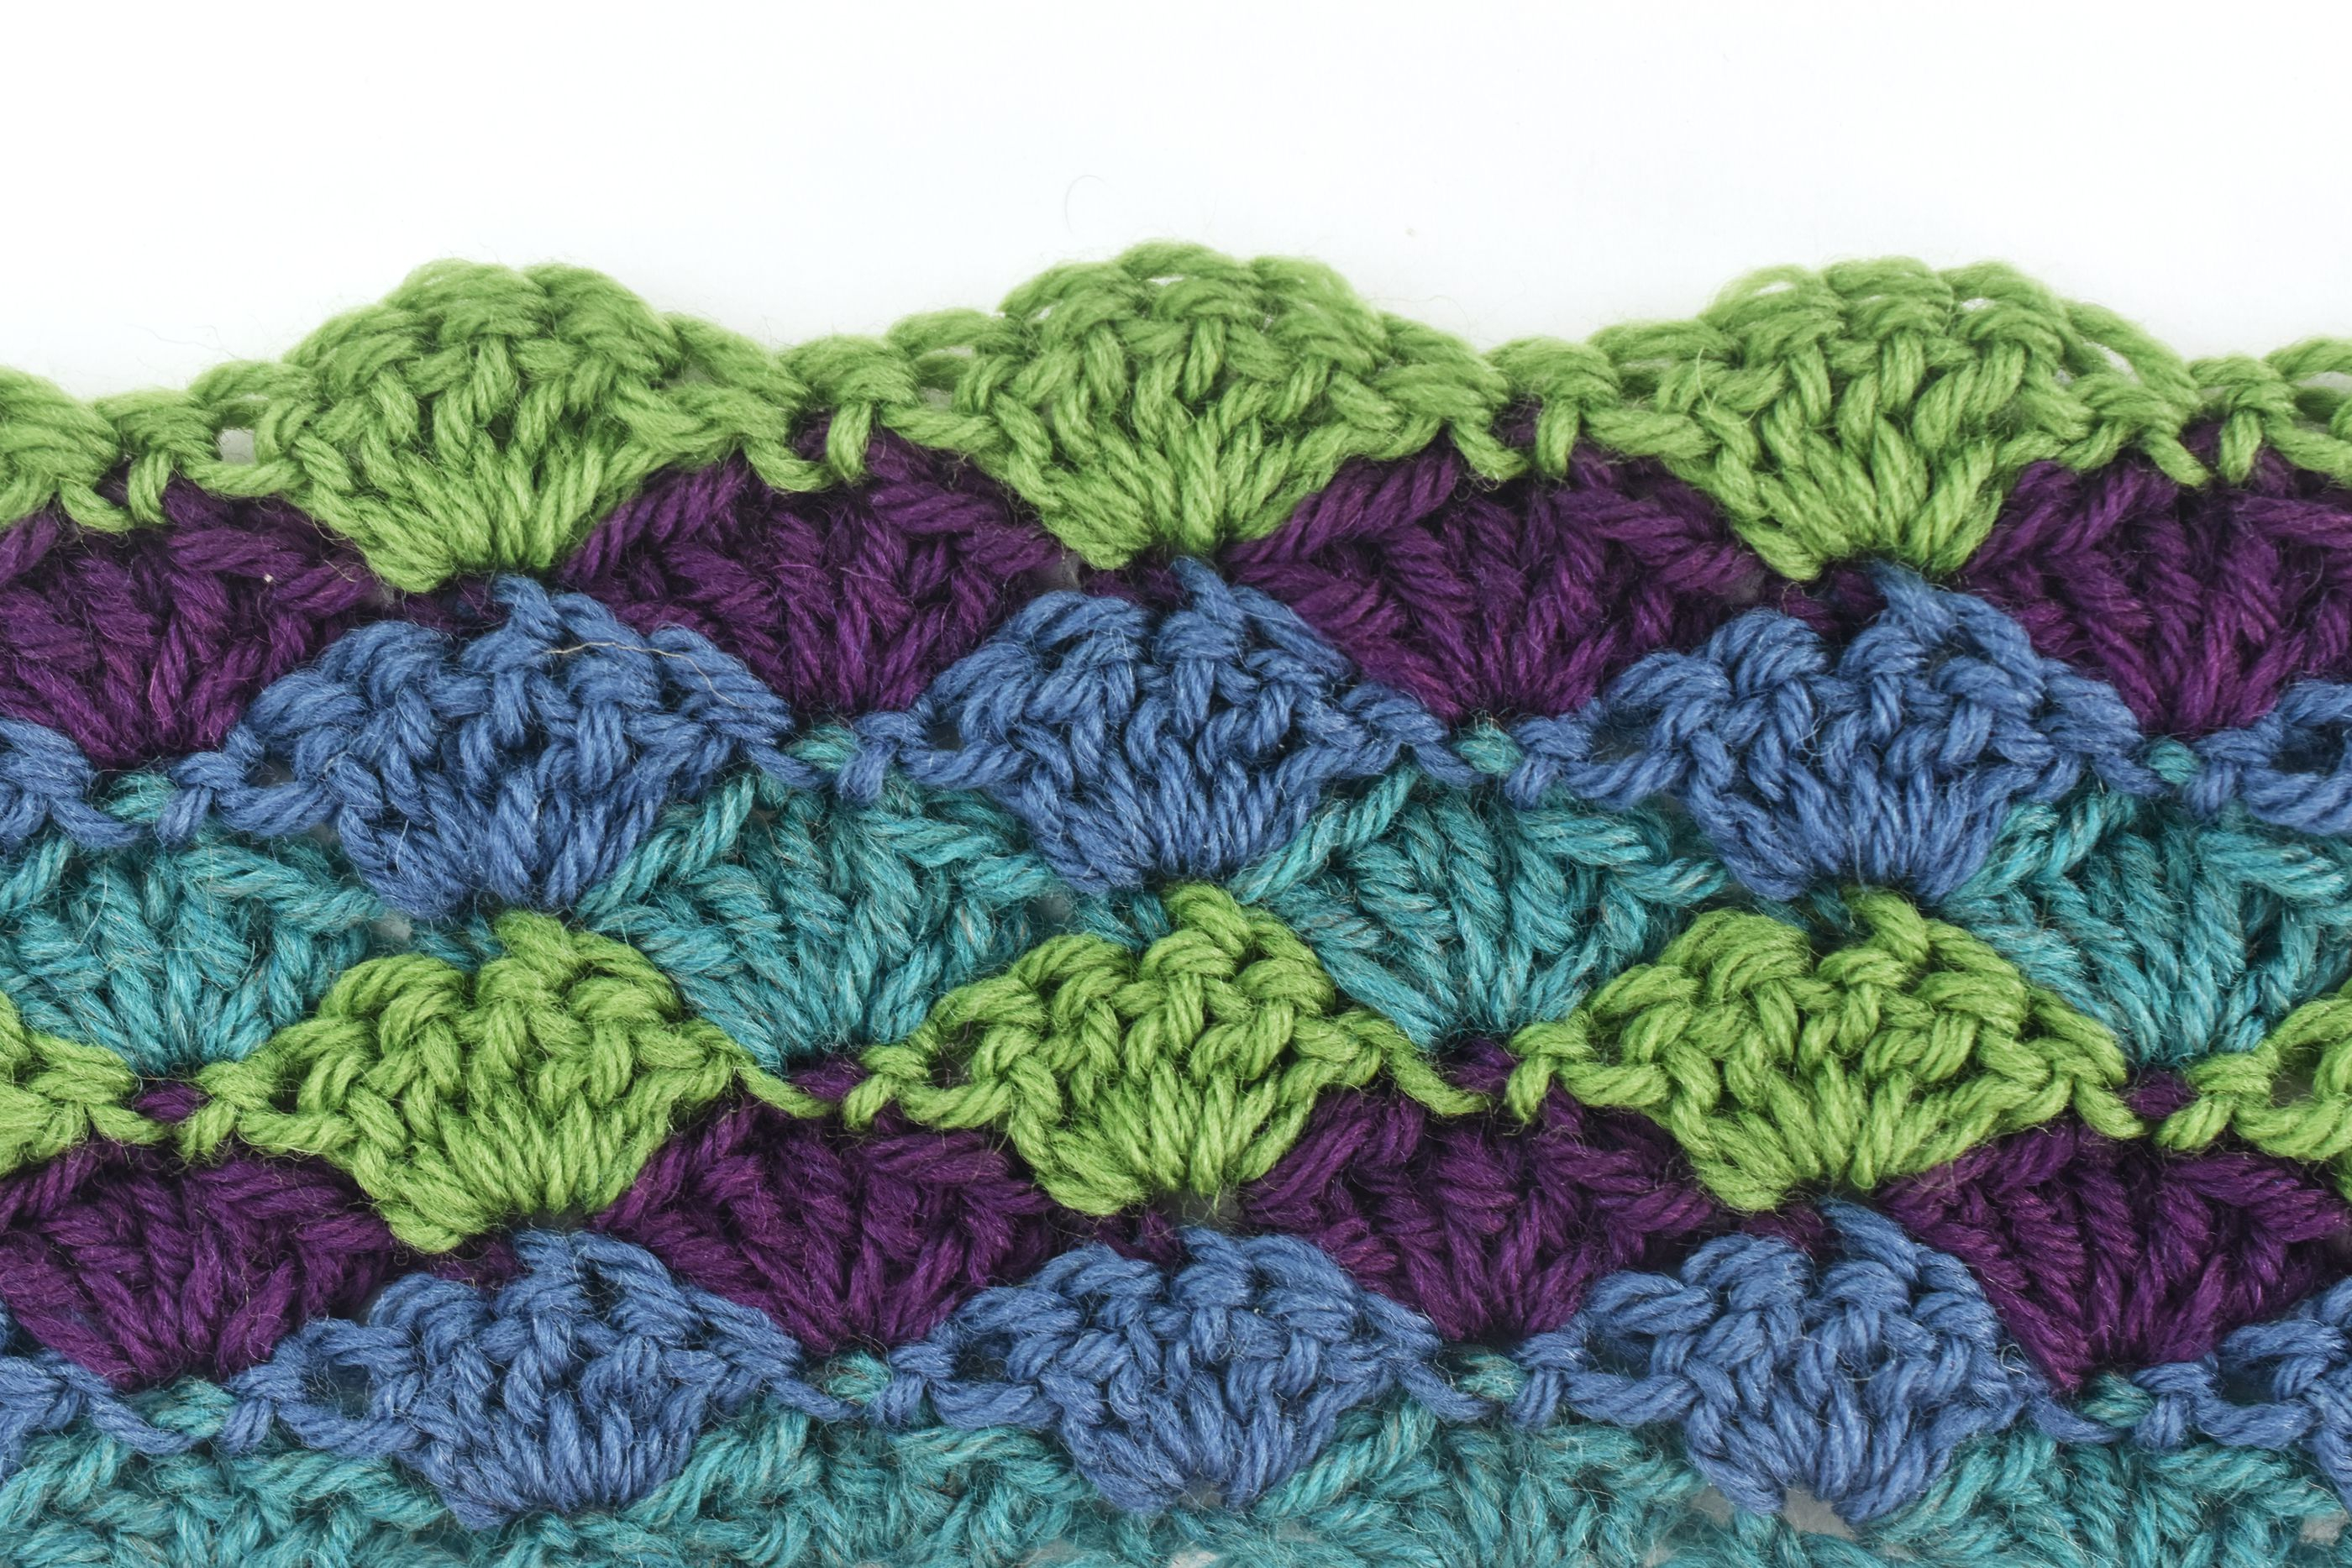 Crochet Shell Stitch Pattern How To Crochet Shell Stitch